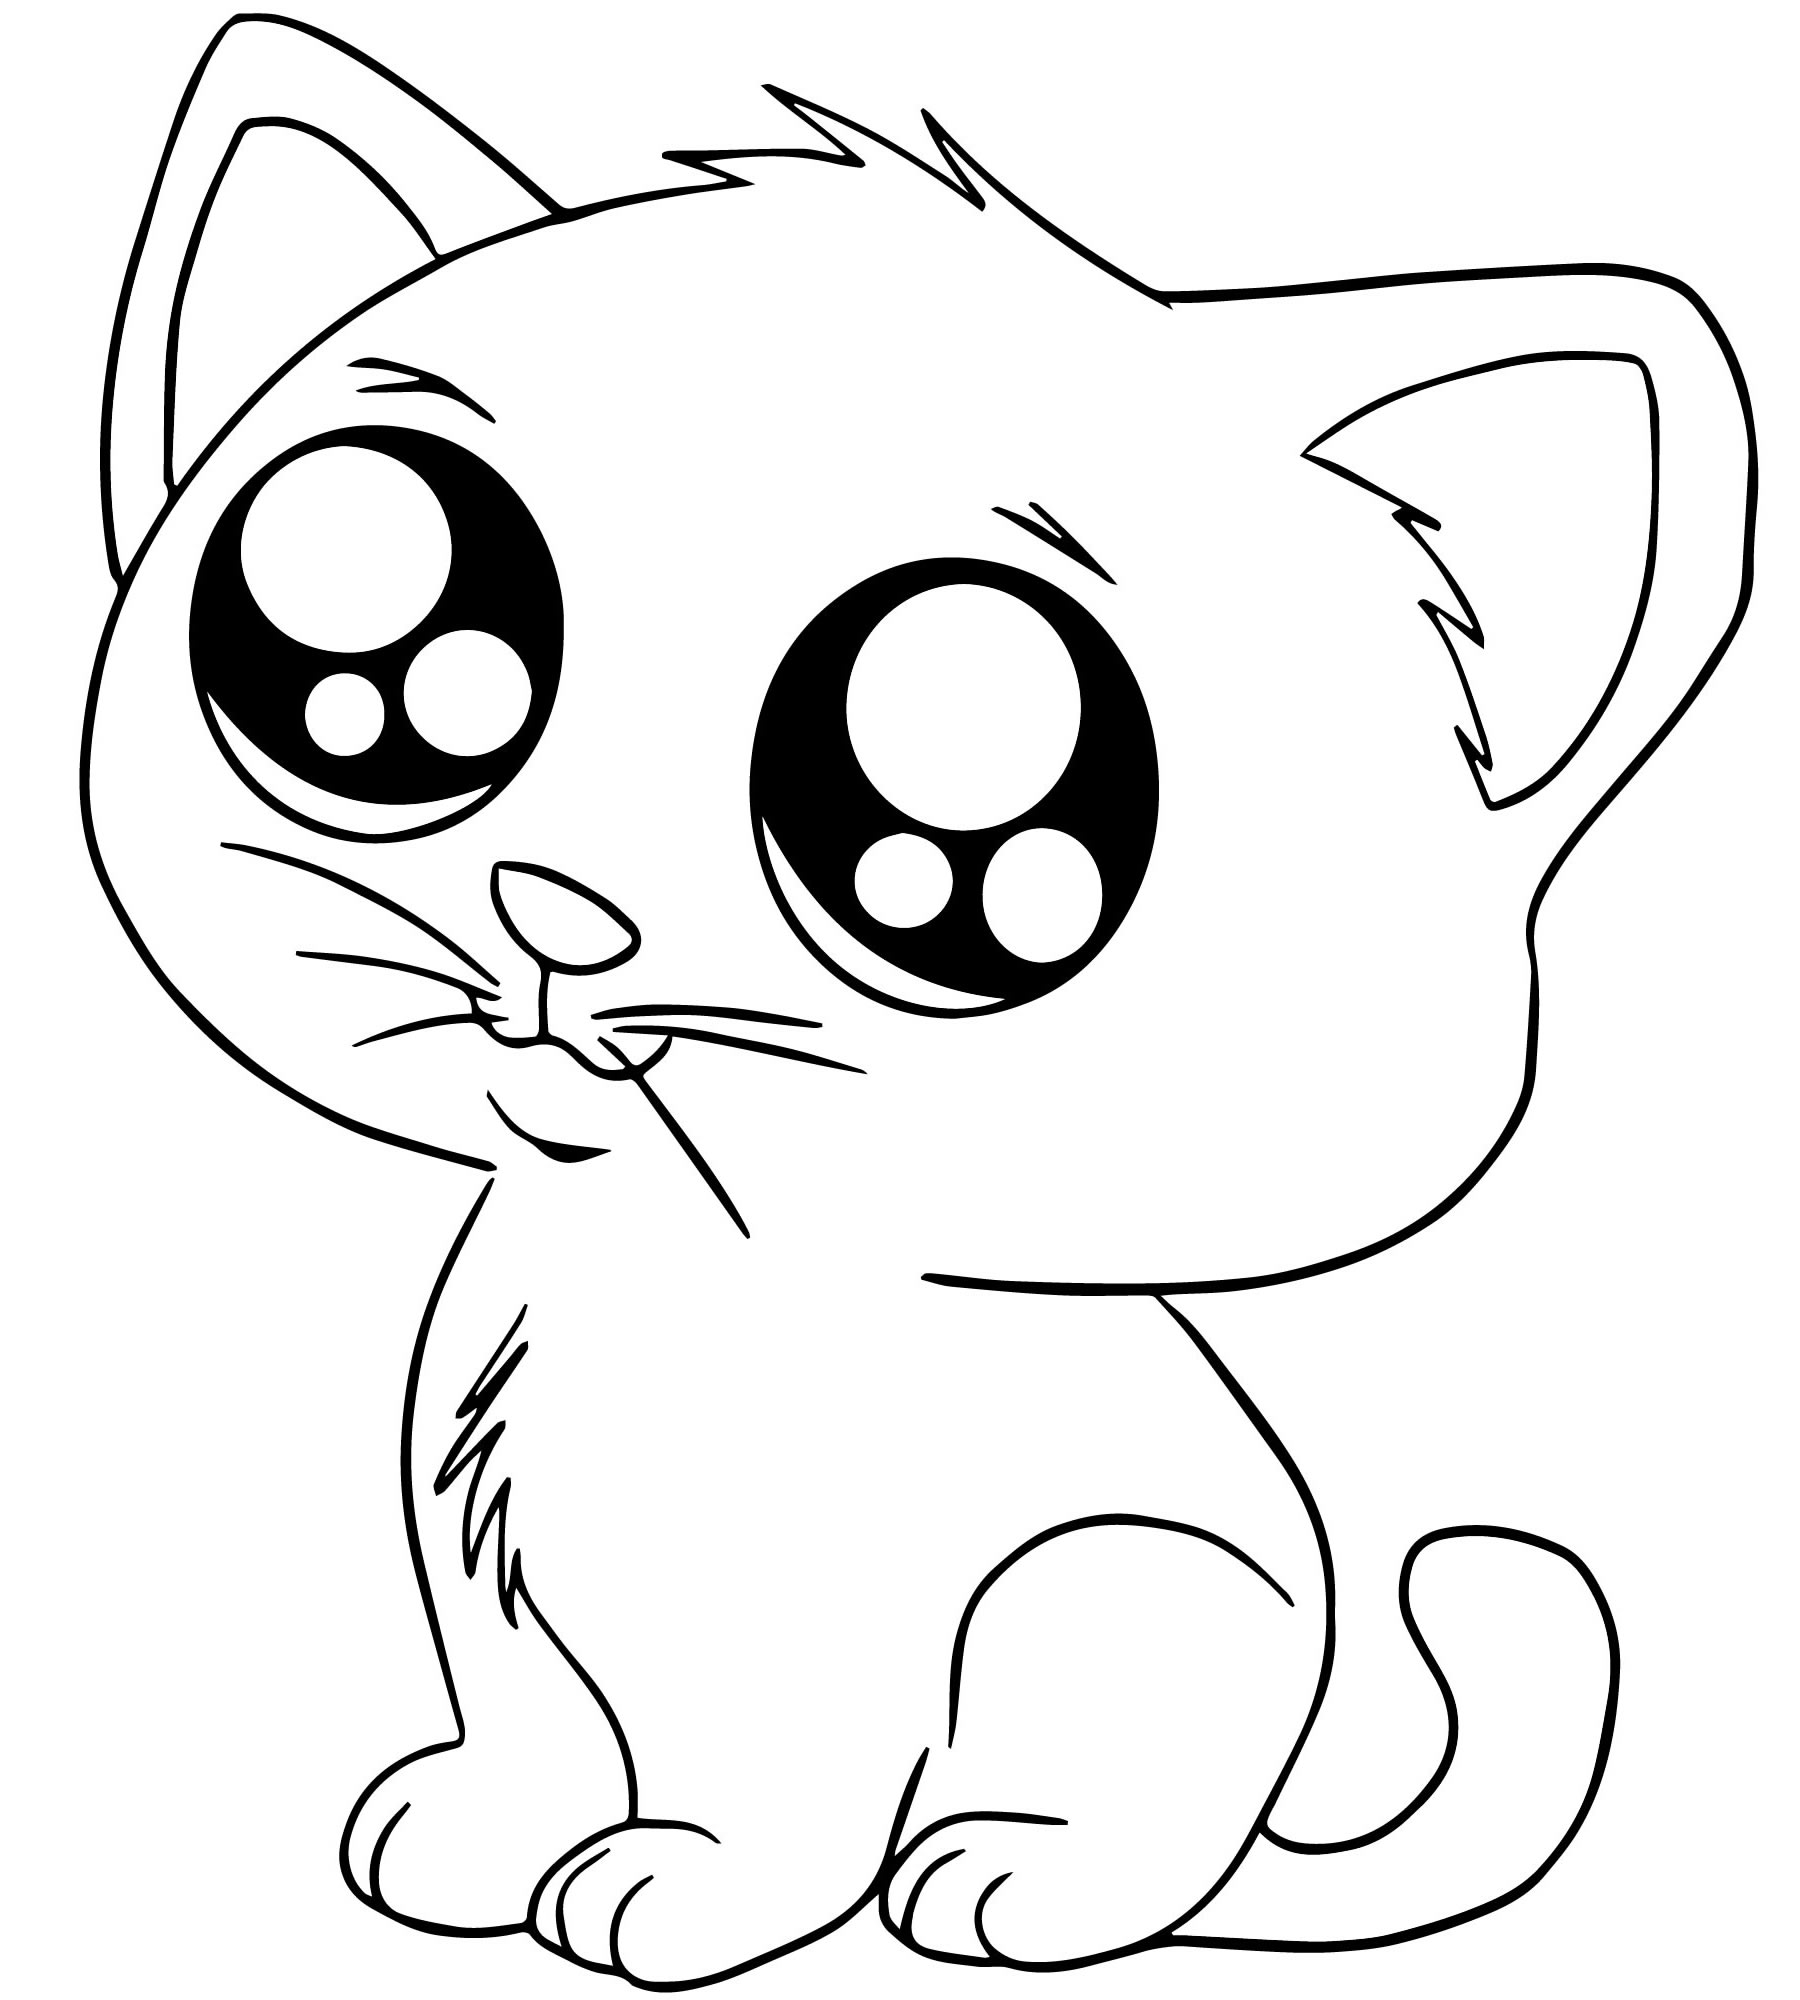 Картинки чтоб срисовывать. Раскраска. Котики. Рисунок кота для срисовки. Раскраска маленькие котята. Милые кошечки раскраска.